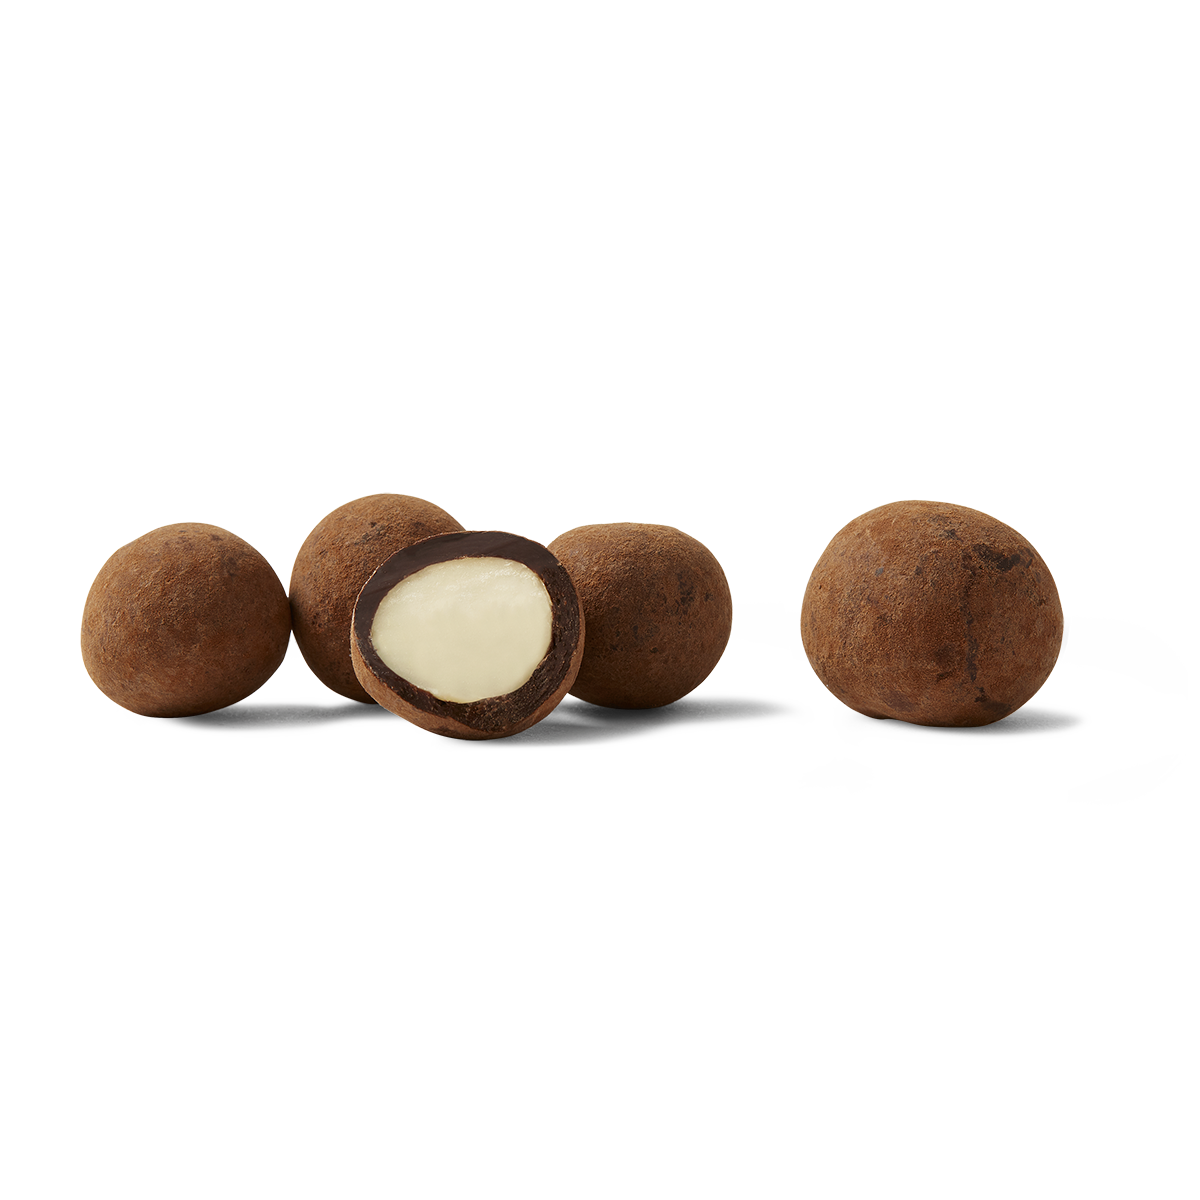 Macadamias 165g | Dark Chocolate